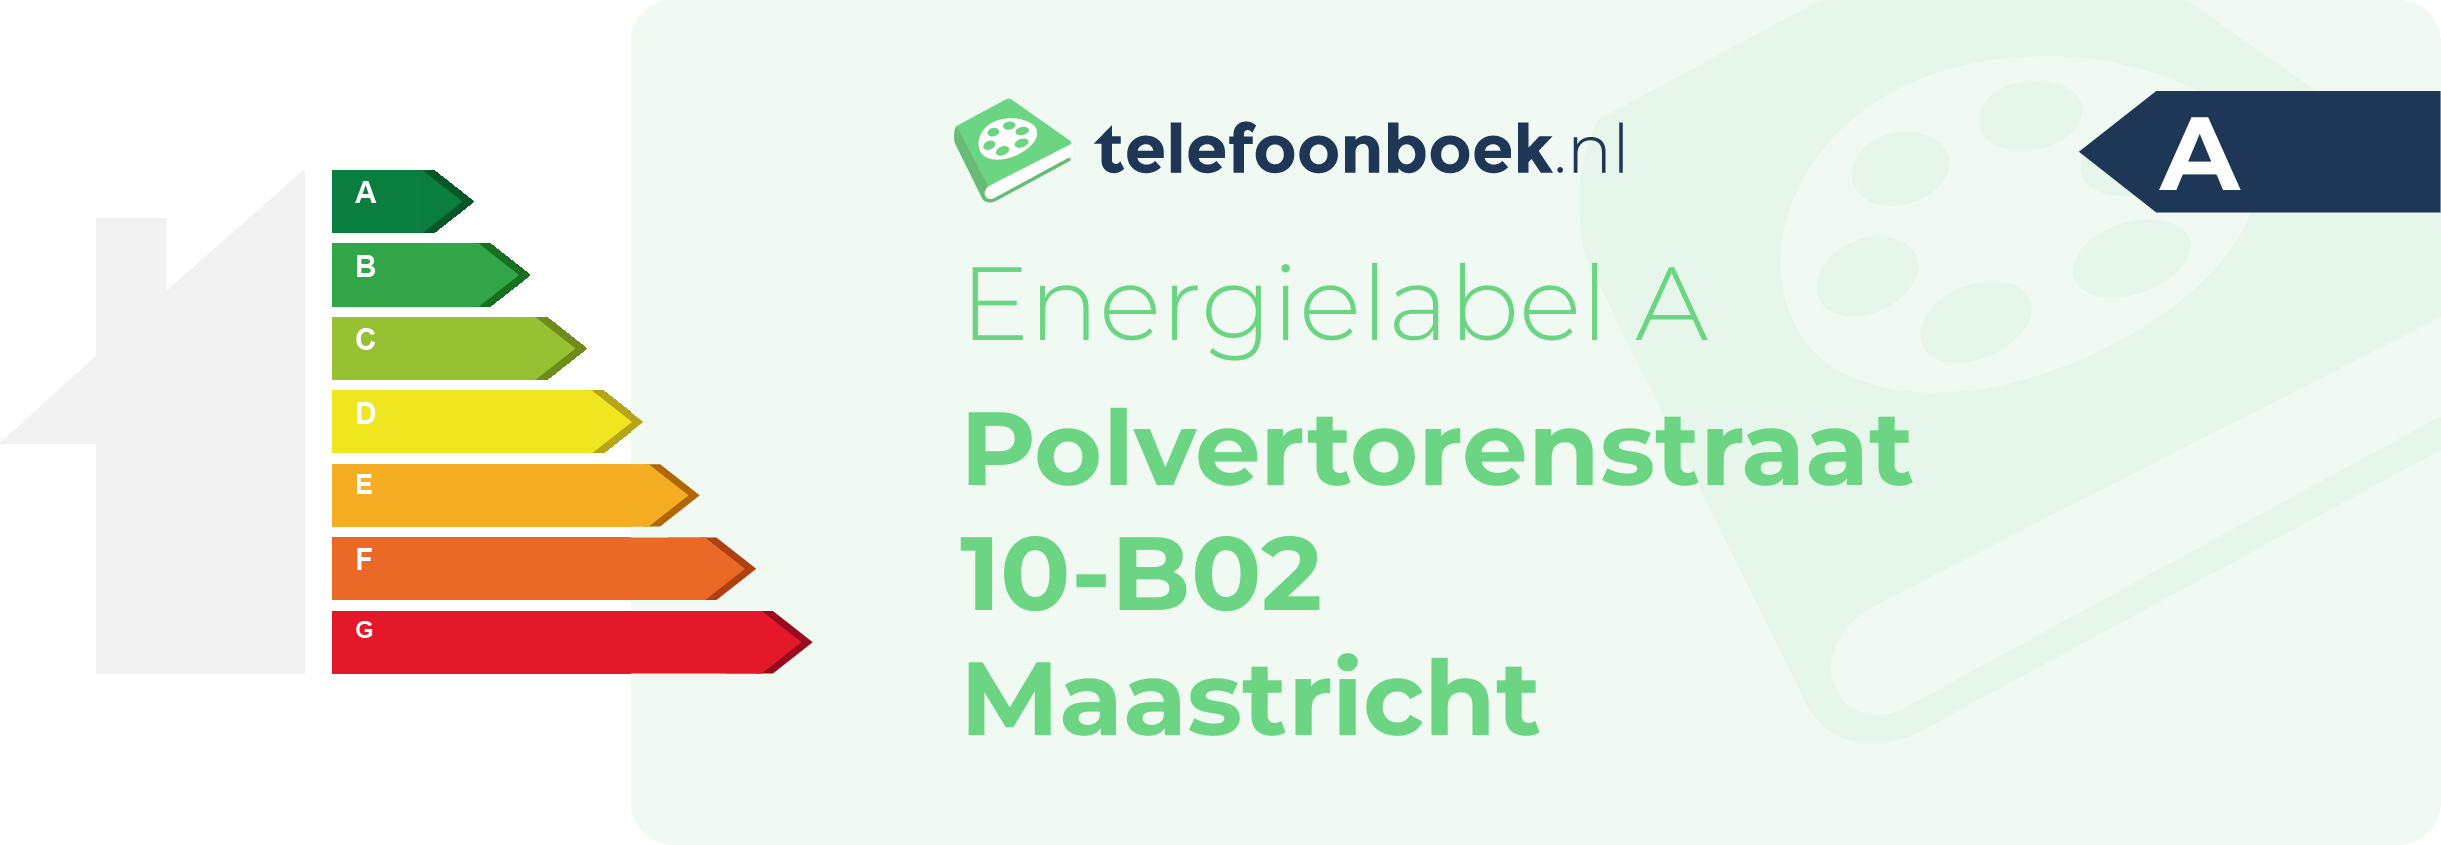 Energielabel Polvertorenstraat 10-B02 Maastricht